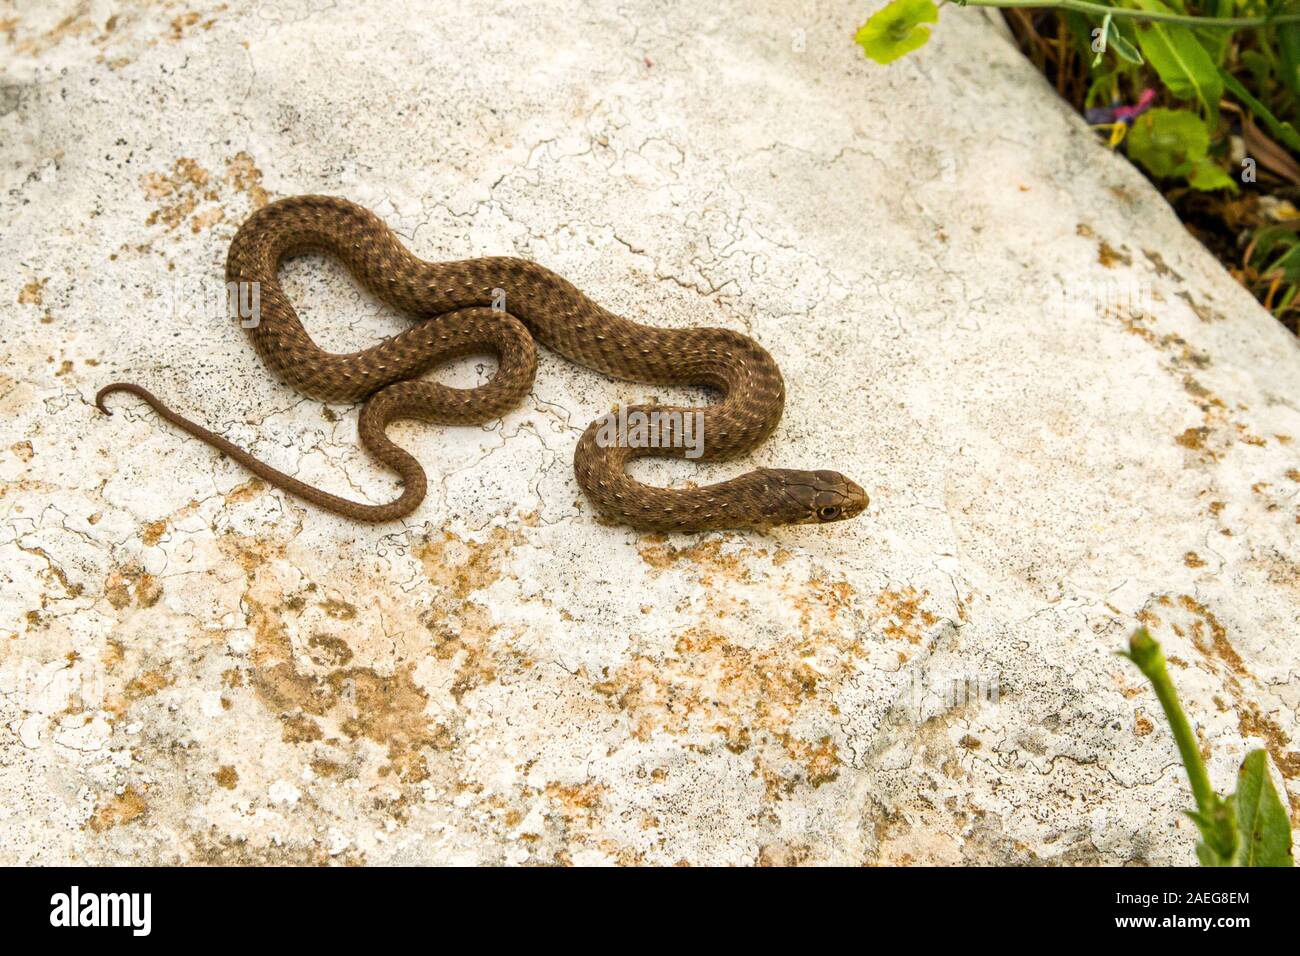 Malpolon monspessulanus, gemeinhin als Montpellier snake genannt, ist eine Pflanzenart aus der Gattung der Milde giftige hinten-fanged colubrids. Montpellier Schlange ist sehr kom Stockfoto